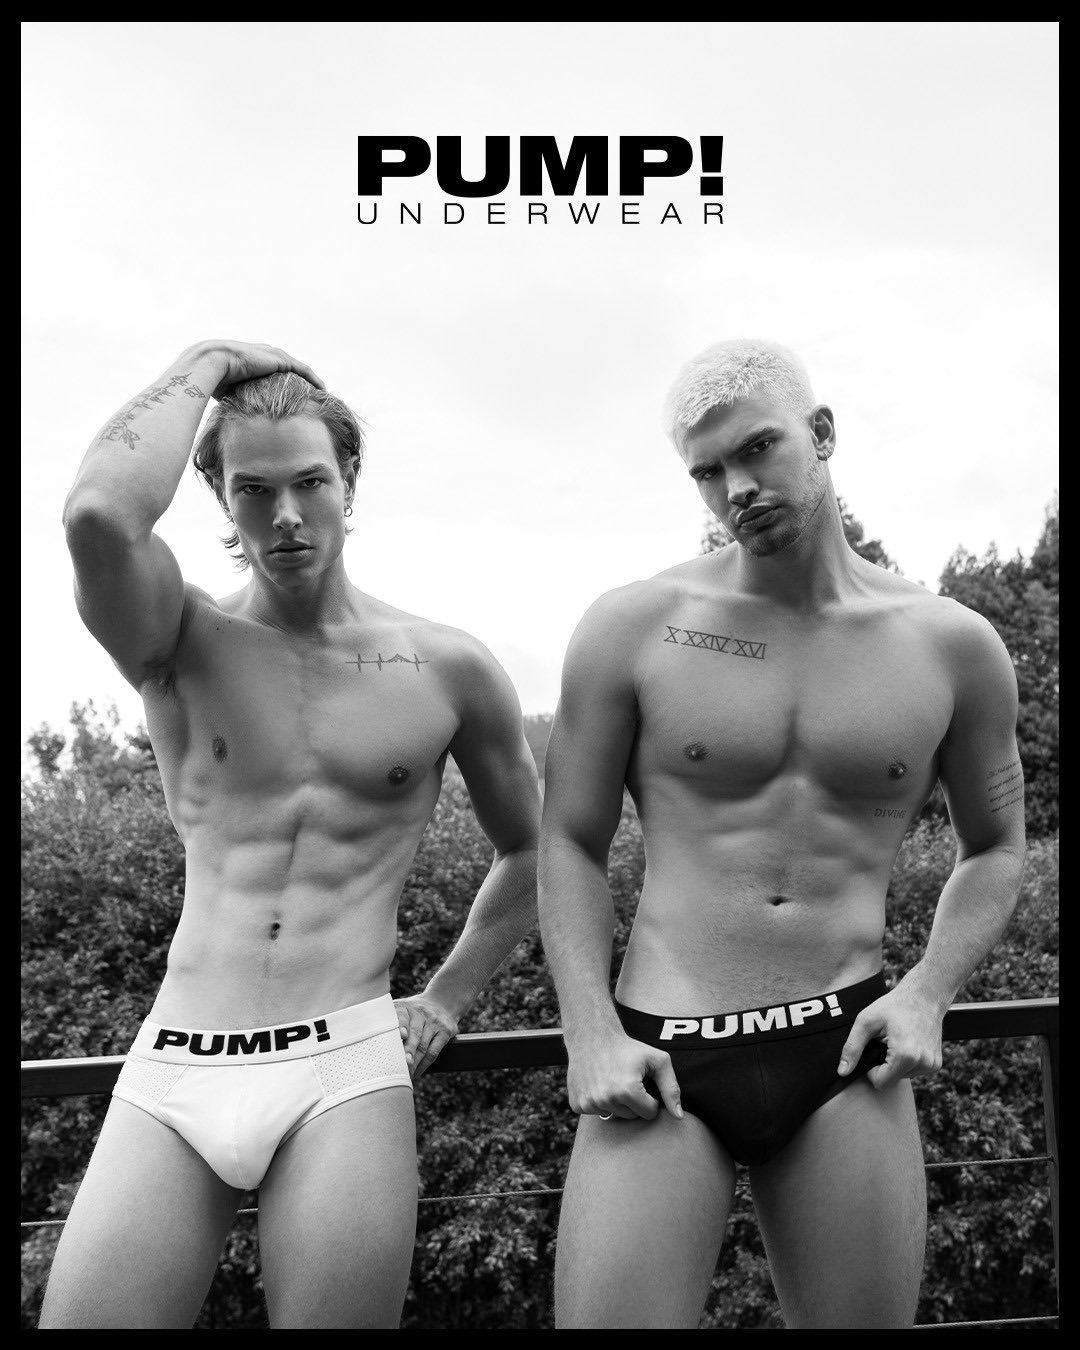 PUMP Underwear - Join Us